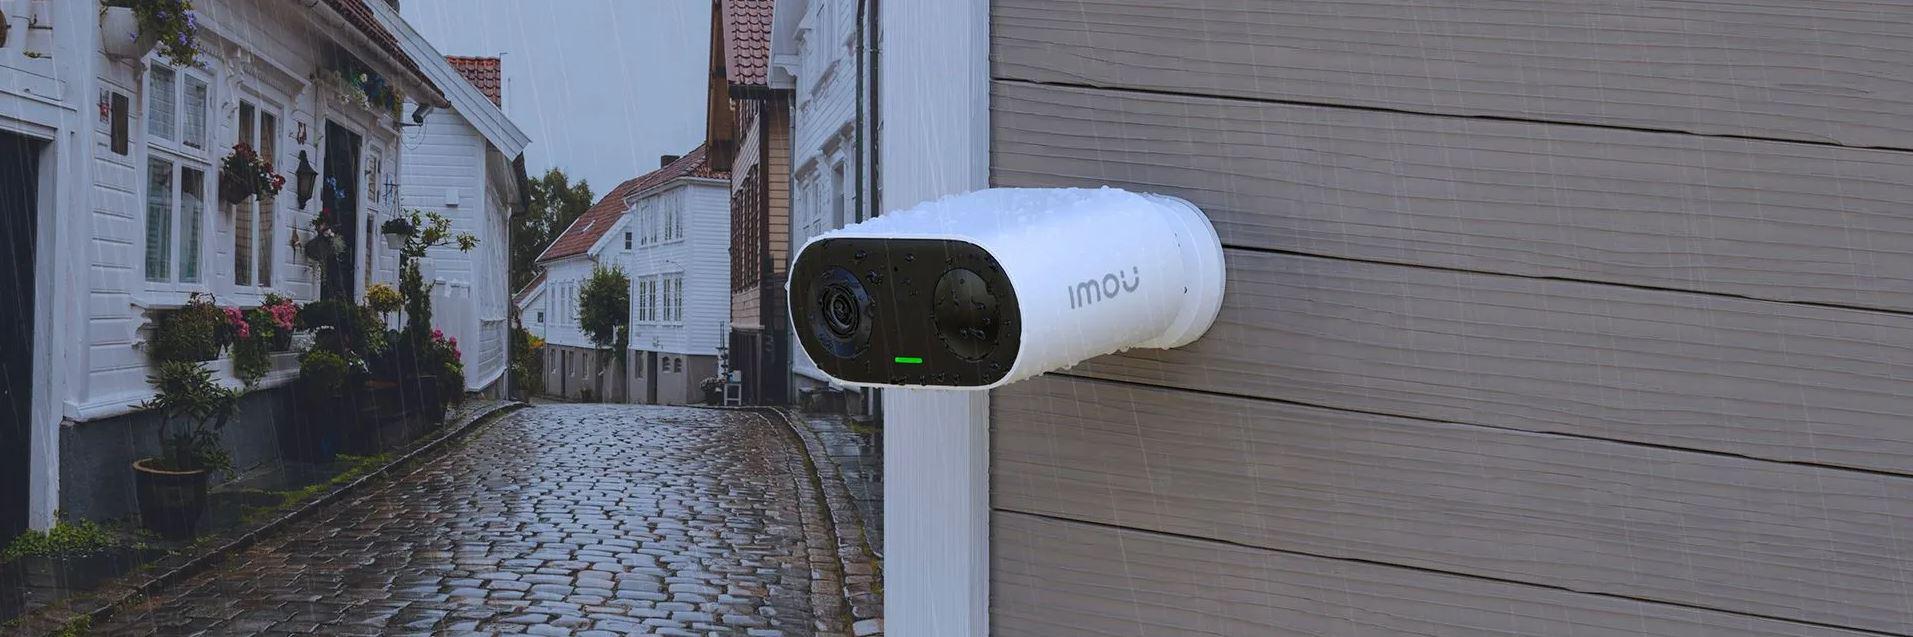 Kamera monitorująca IP Imou Cell Go odporna na trudne warunki atmosferyczne i wodoodporna (certyfikat IP65)